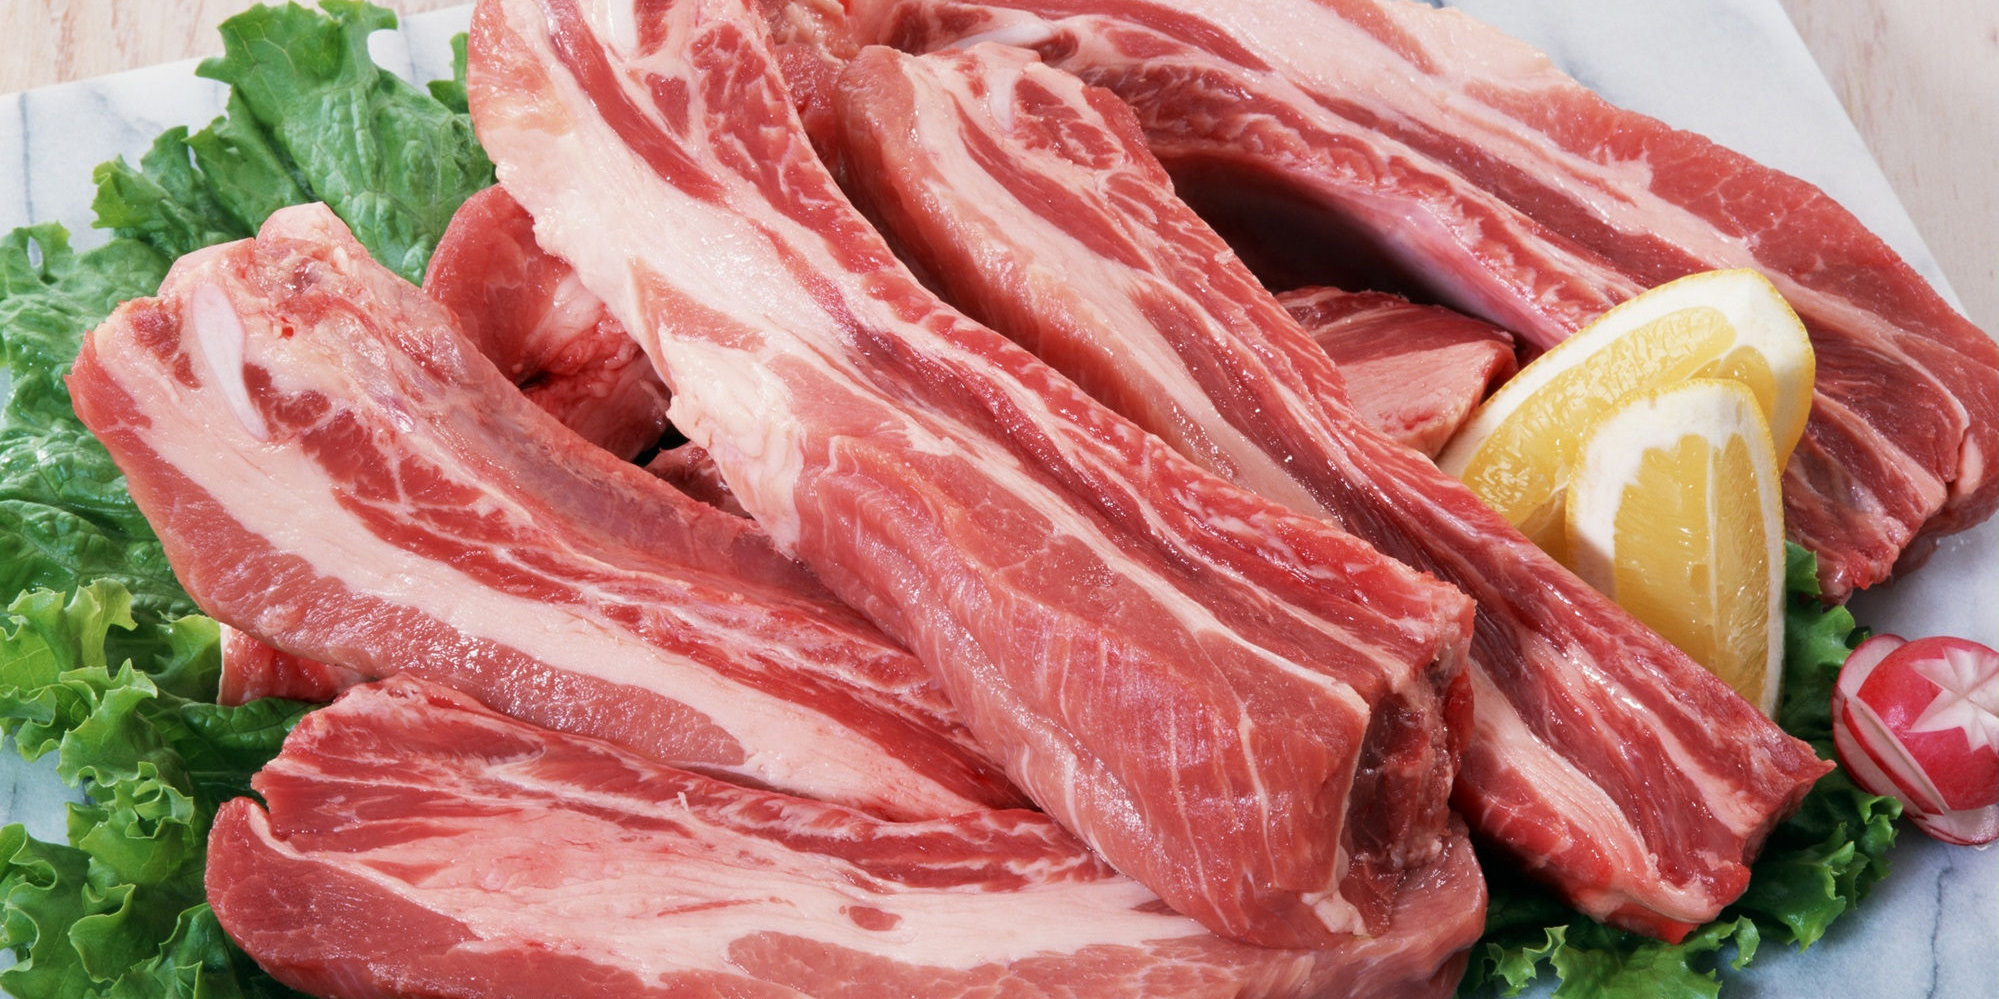 مشکلی در واردات گوشت قرمز از برزیل نداریم/ حضور ناظران بهداشتی ایران در 11 کشور صادرکننده